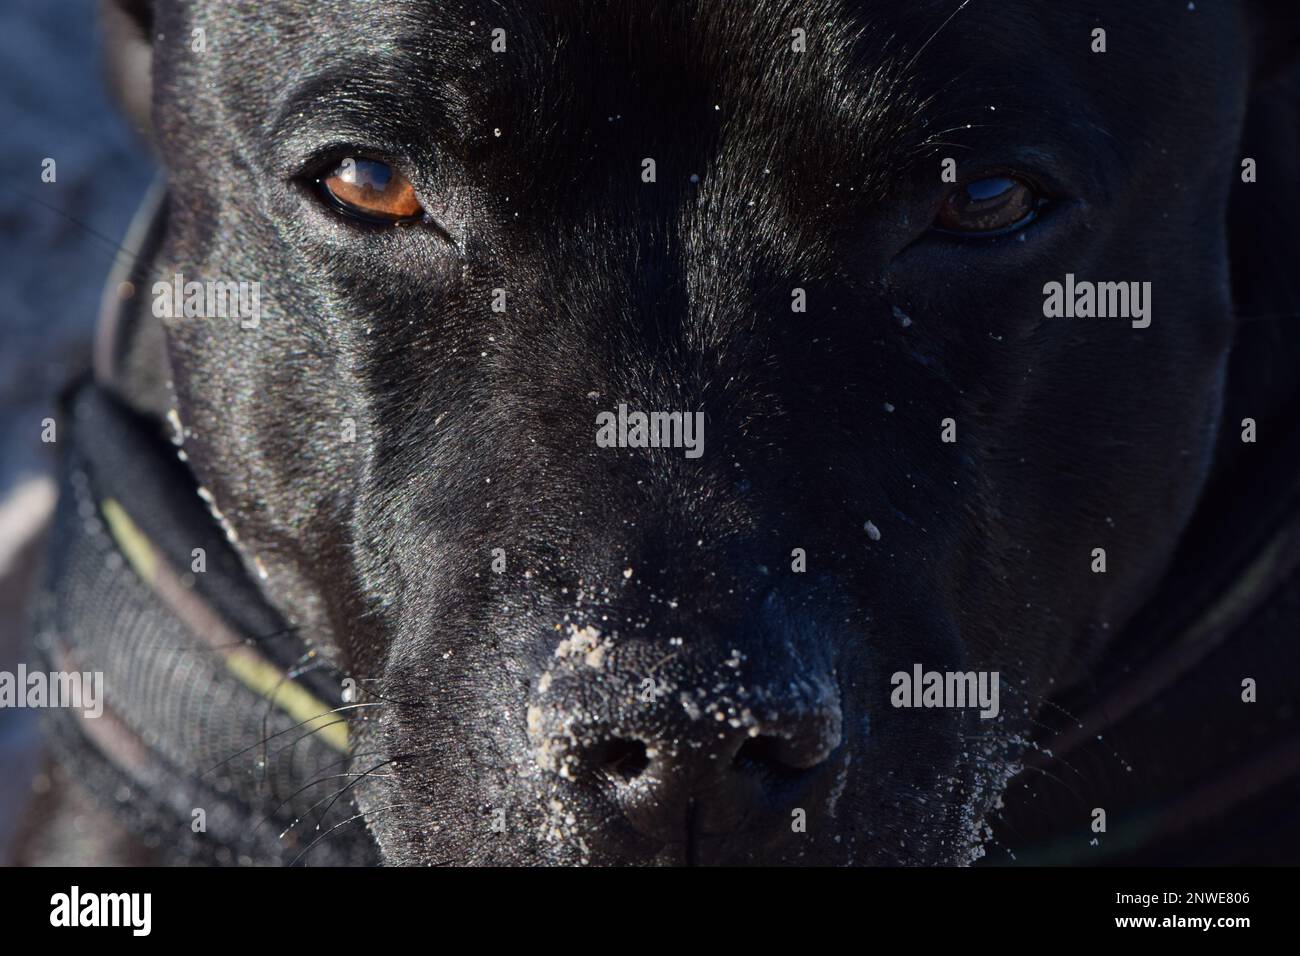 Gros plan sur le regard d'un chien de race Staffordshire Bullterrier, yeux, museau et truffe Stock Photo